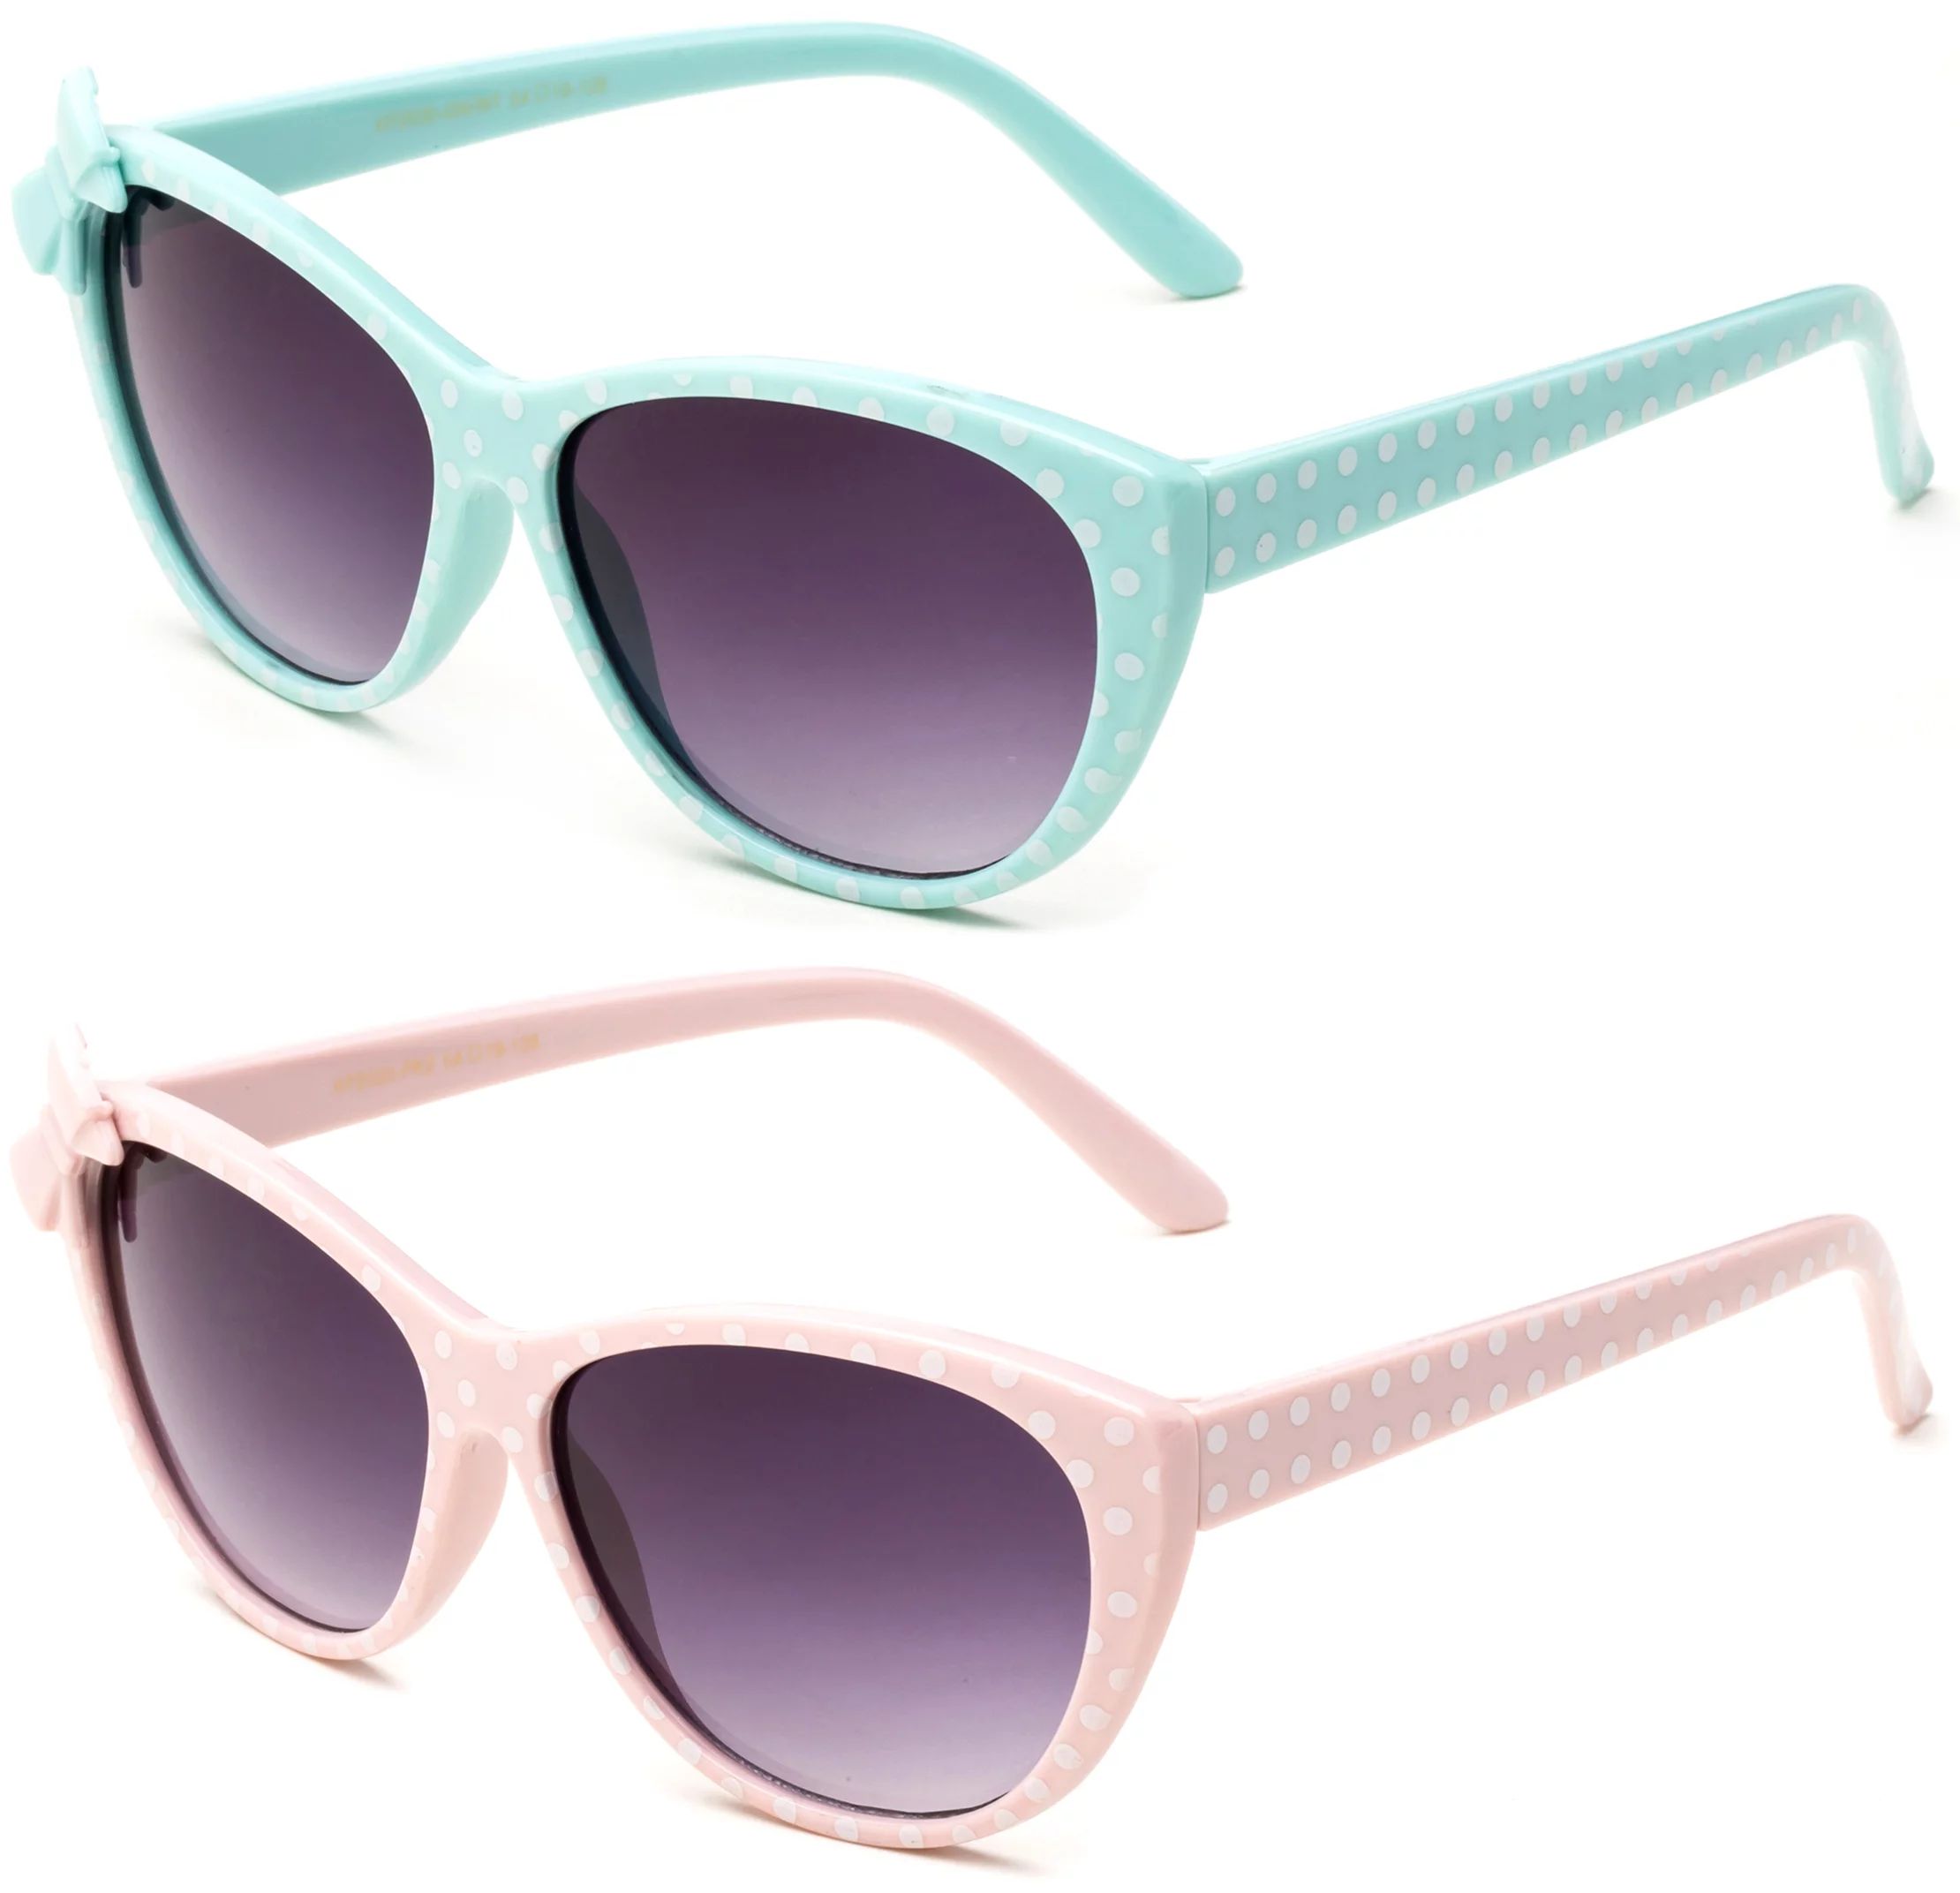 Newbee Fashion - Kids Girls Cute Bow Fashion Sunglasses One Piece Shield Lense (4-12 Years) UV Pr... | Walmart (US)